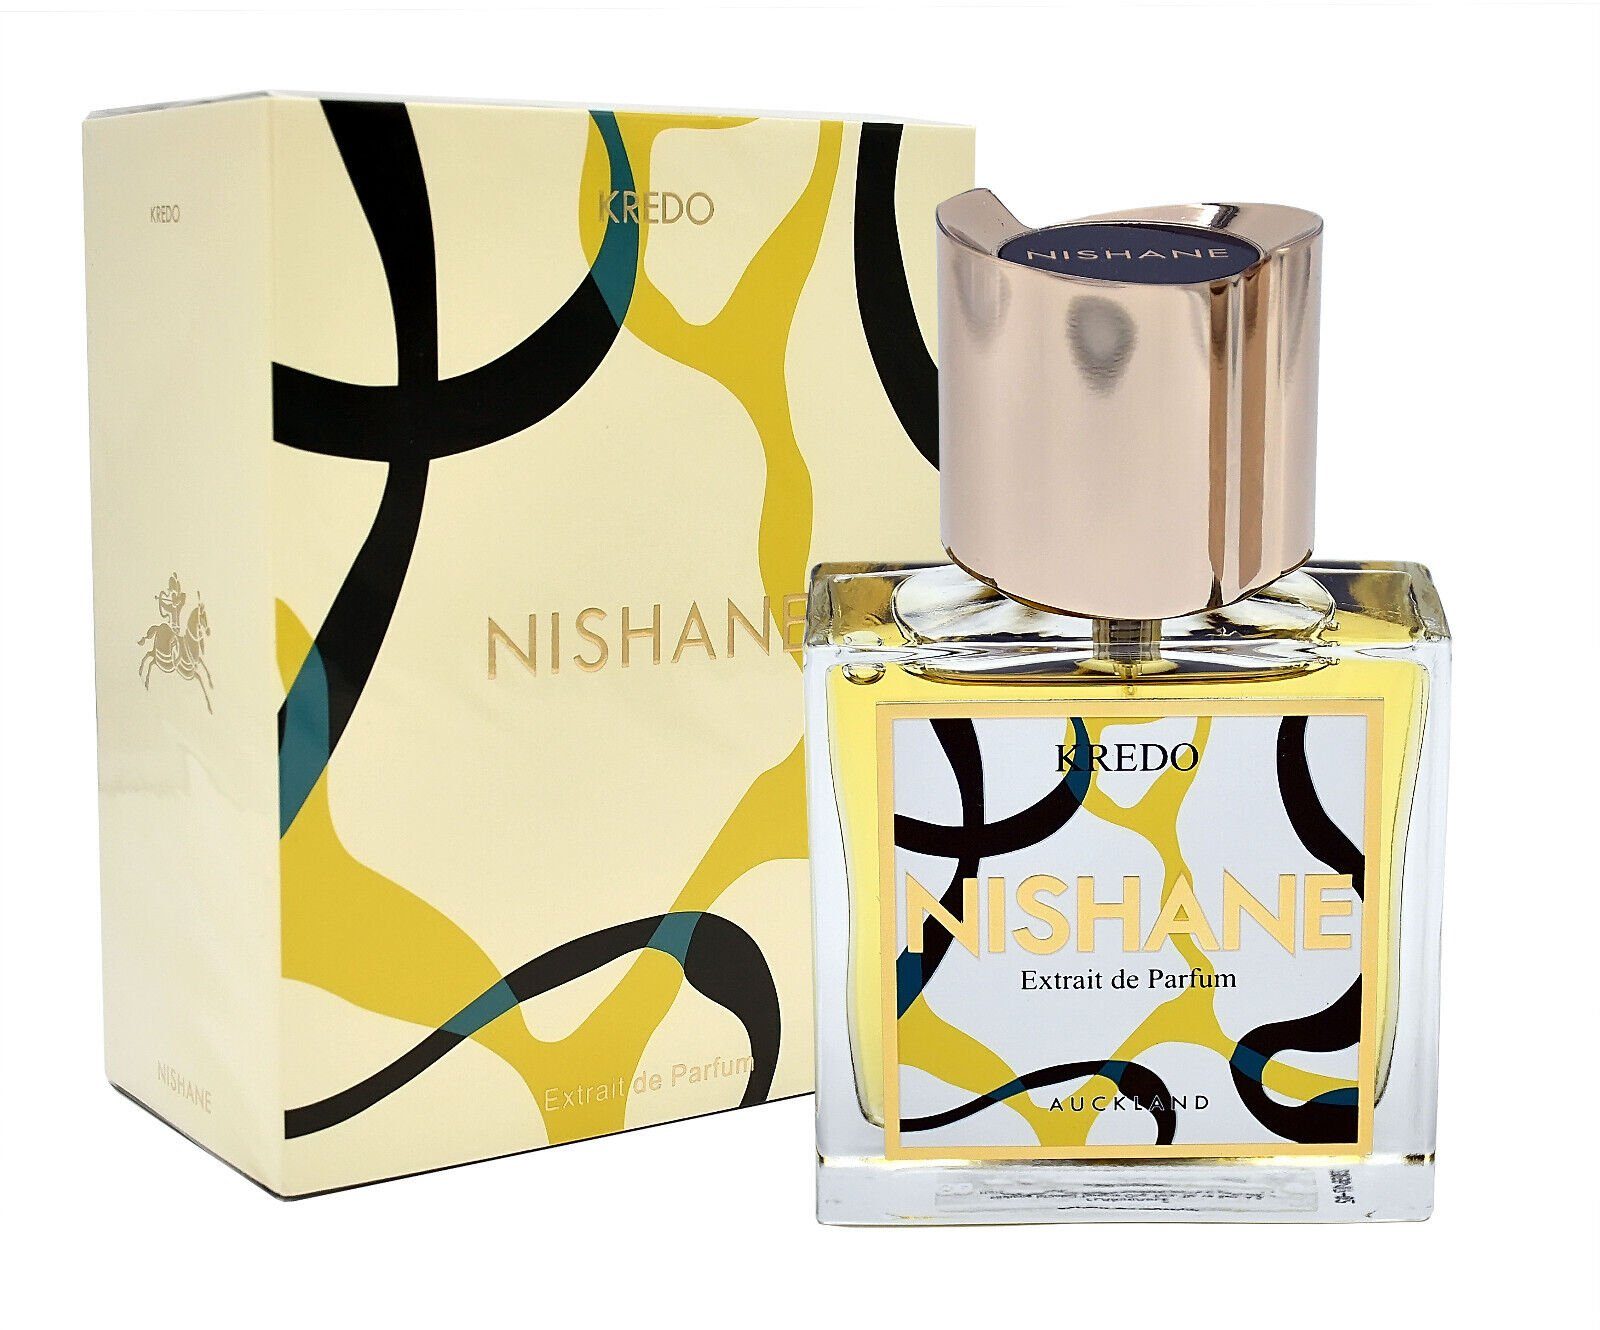 Nishane Eau de Parfum NISHANE KREDO EDP 100 ML